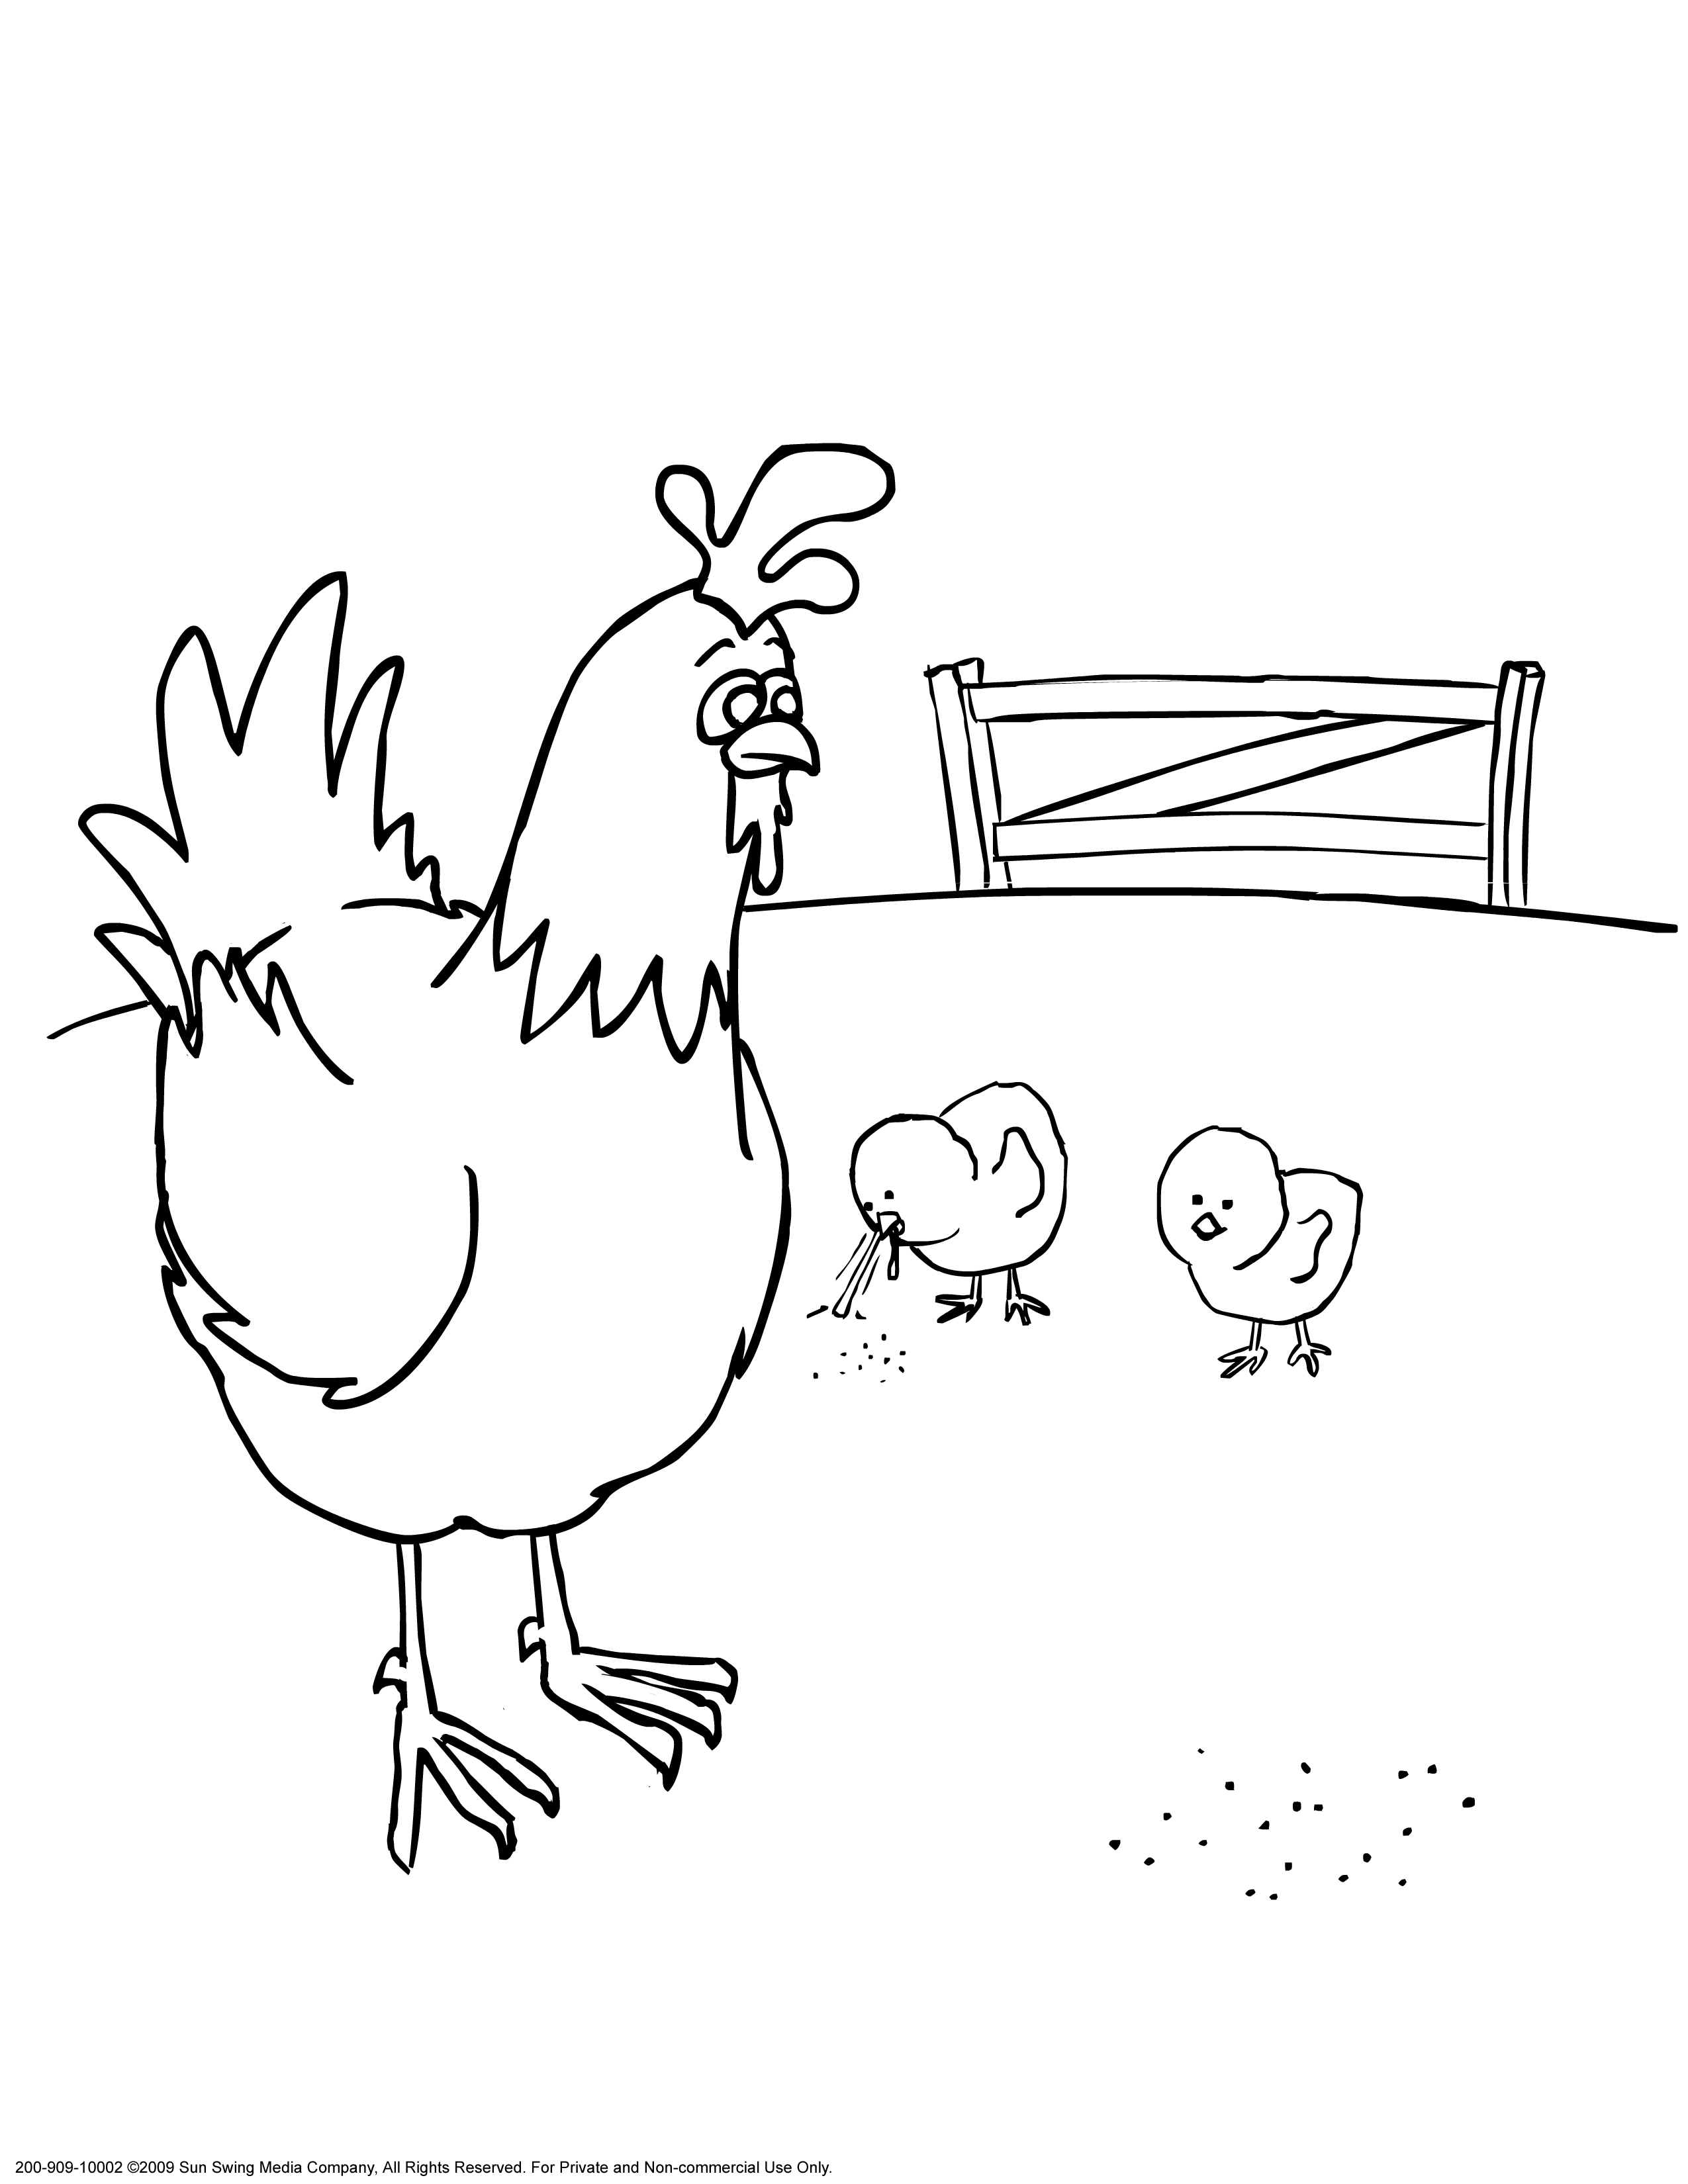 Курица с цыплятами раскраска для детей